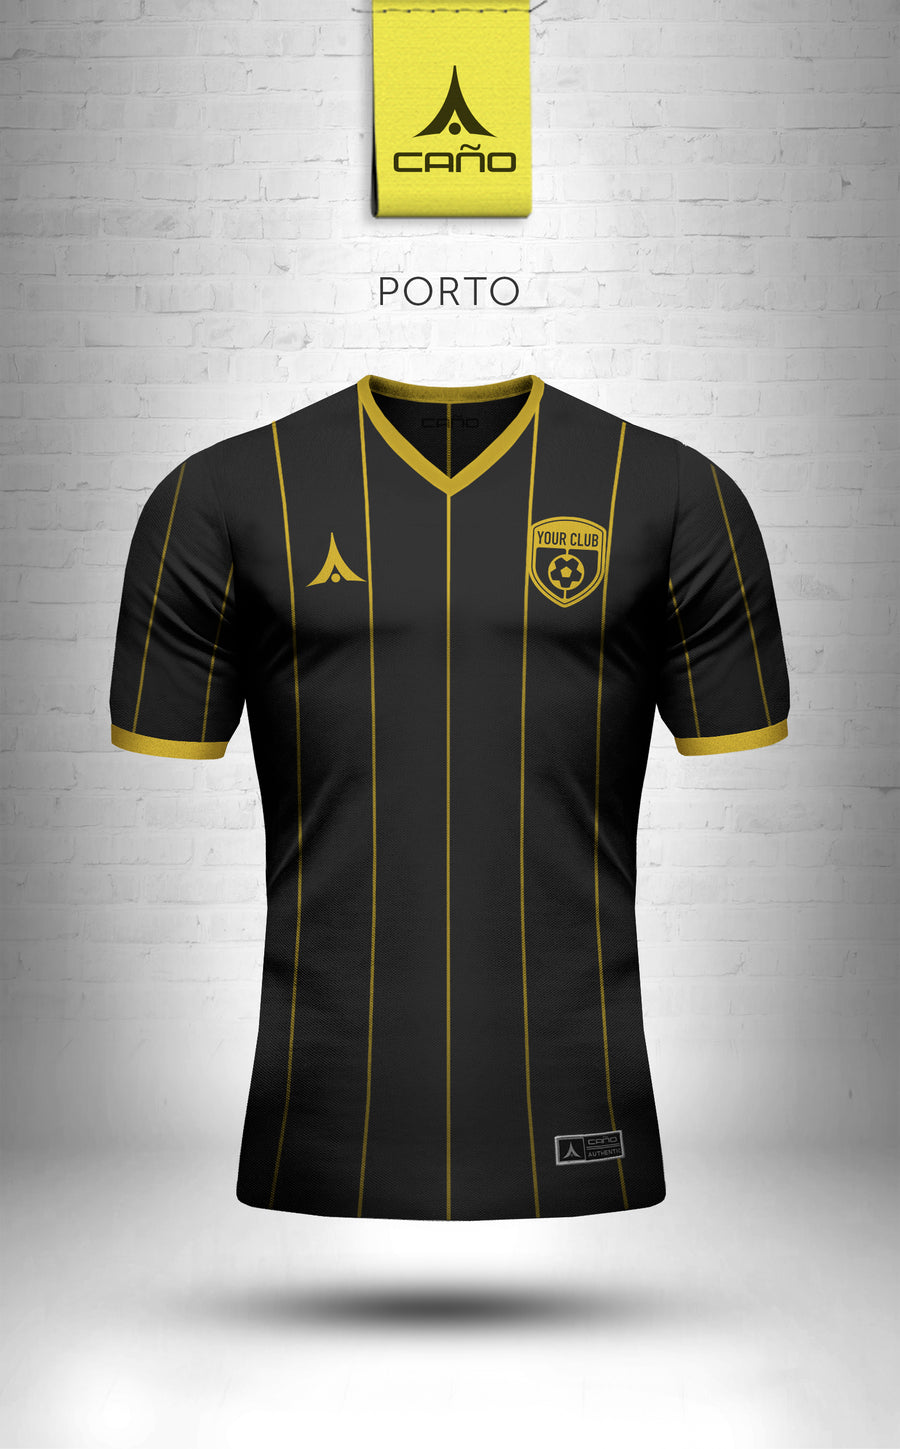 Porto in black/gold